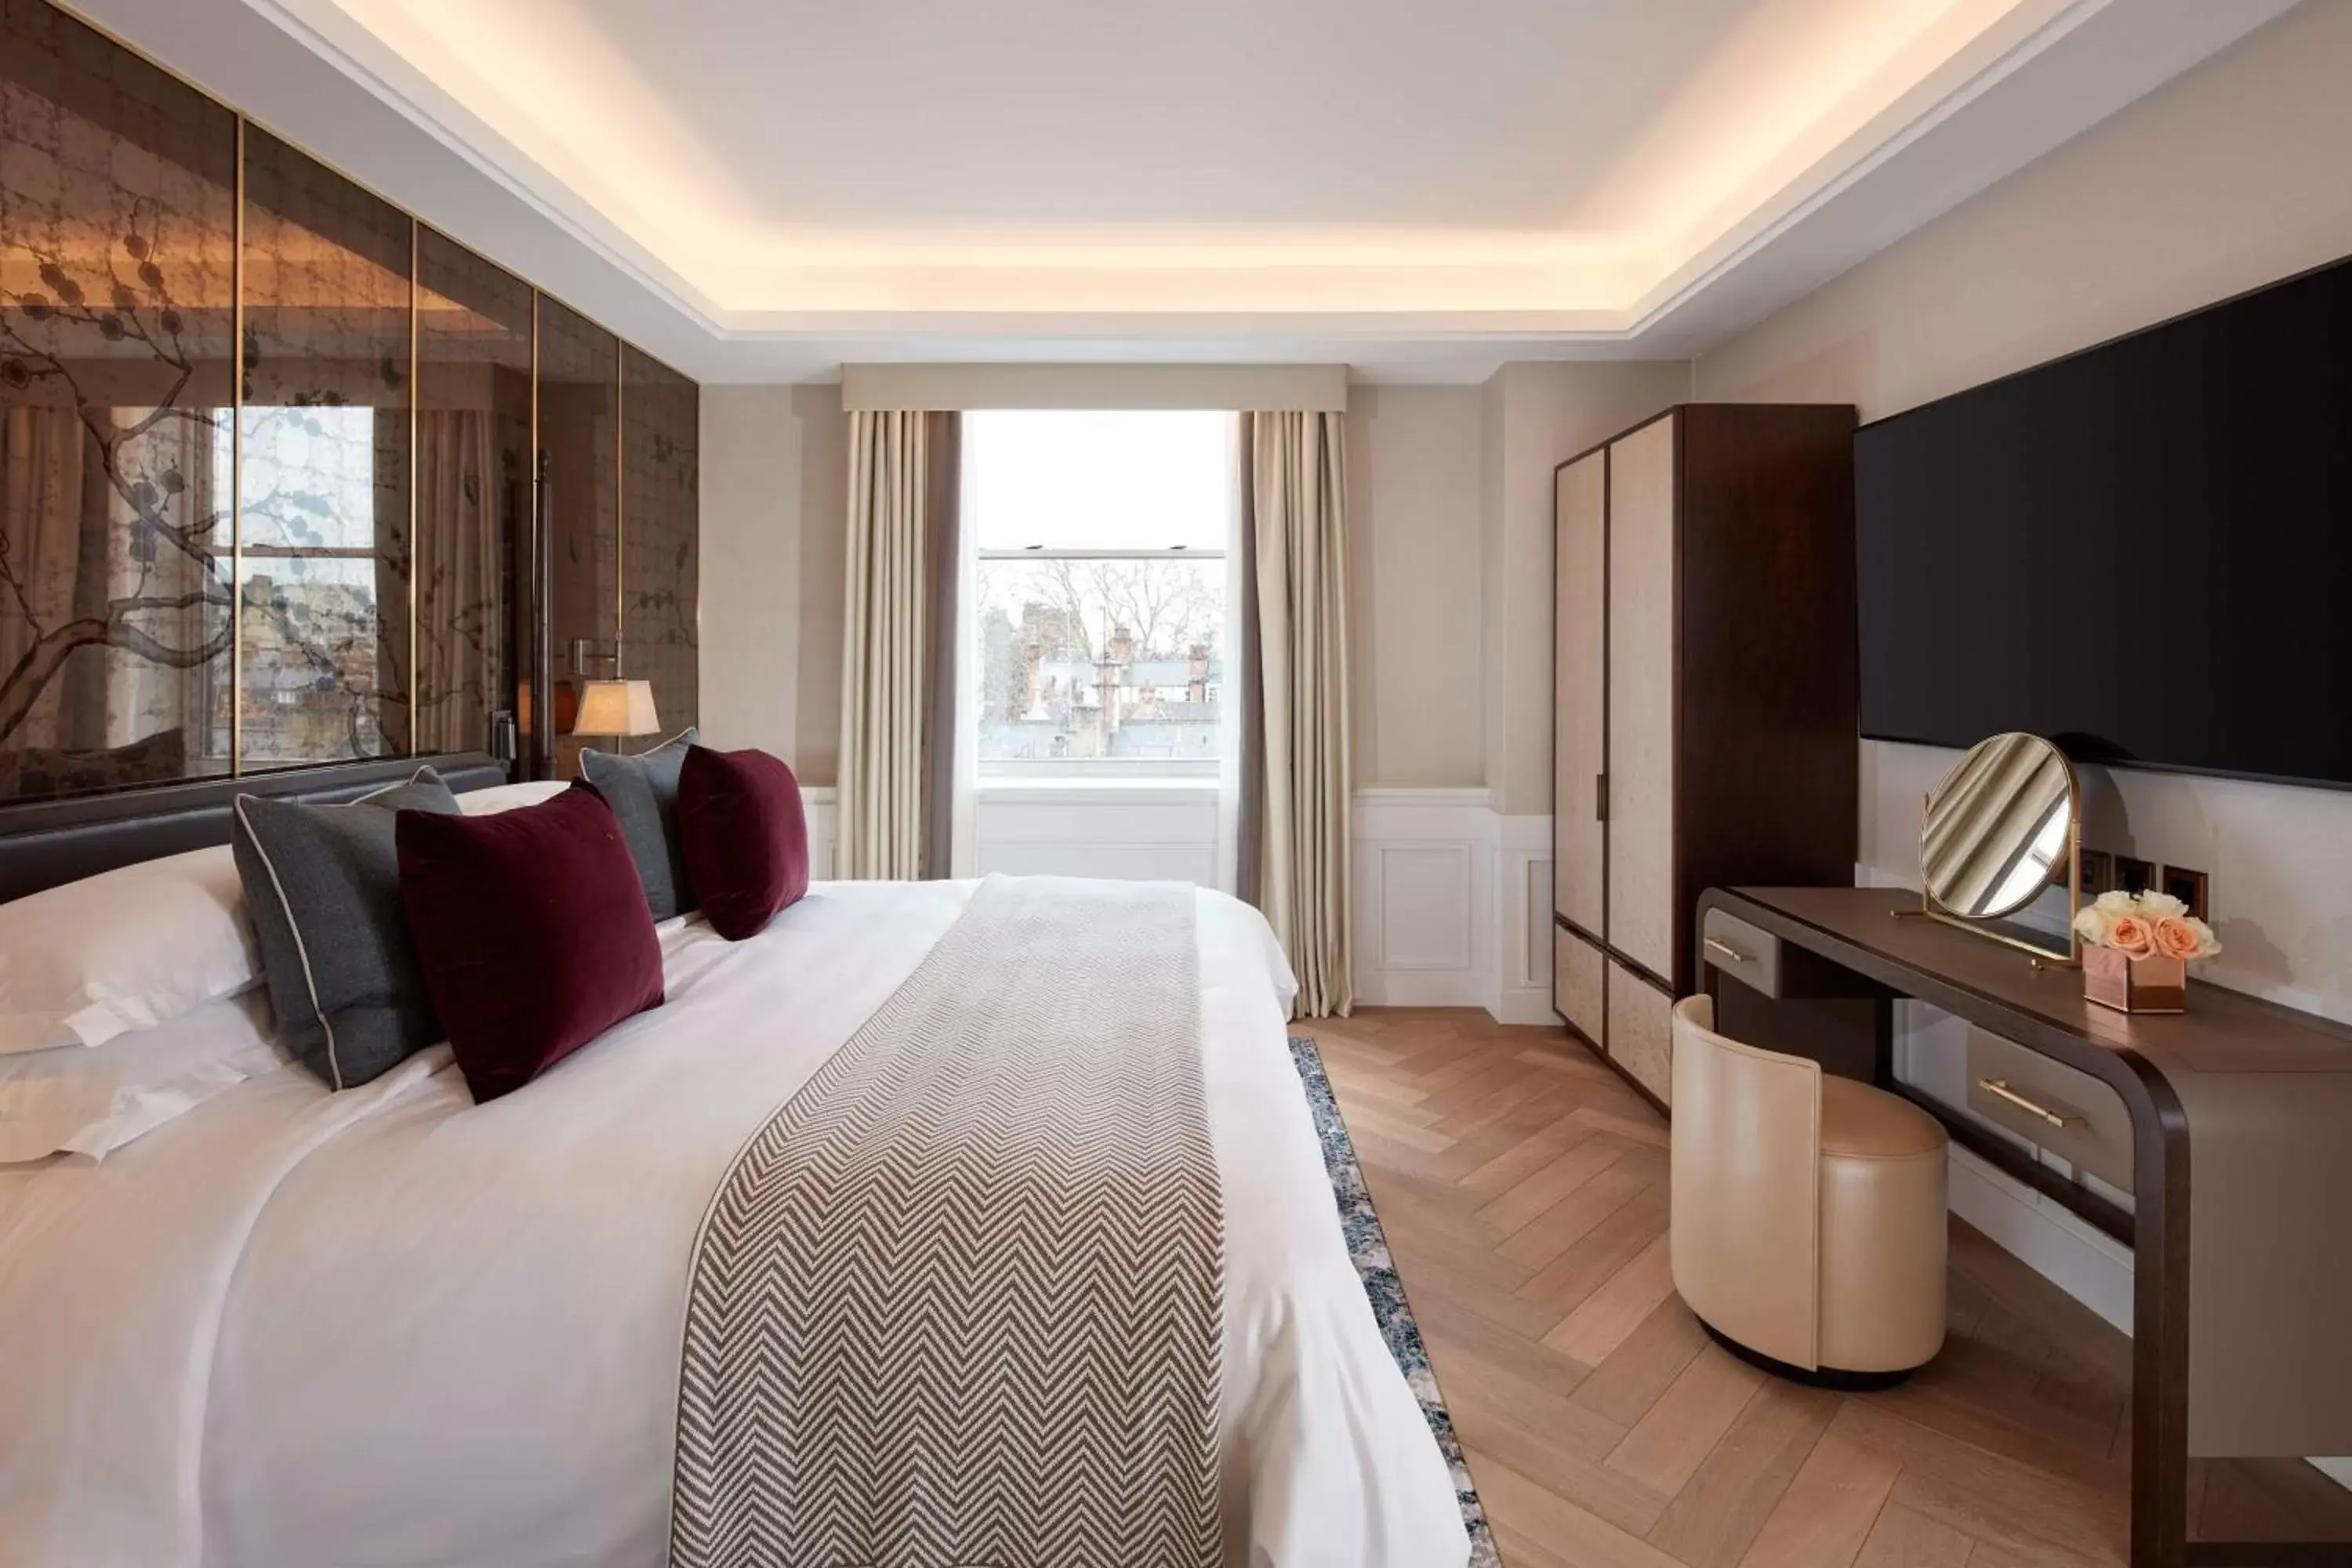 Bedroom in The Biltmore Mayfair, LXR Hotels & Resorts